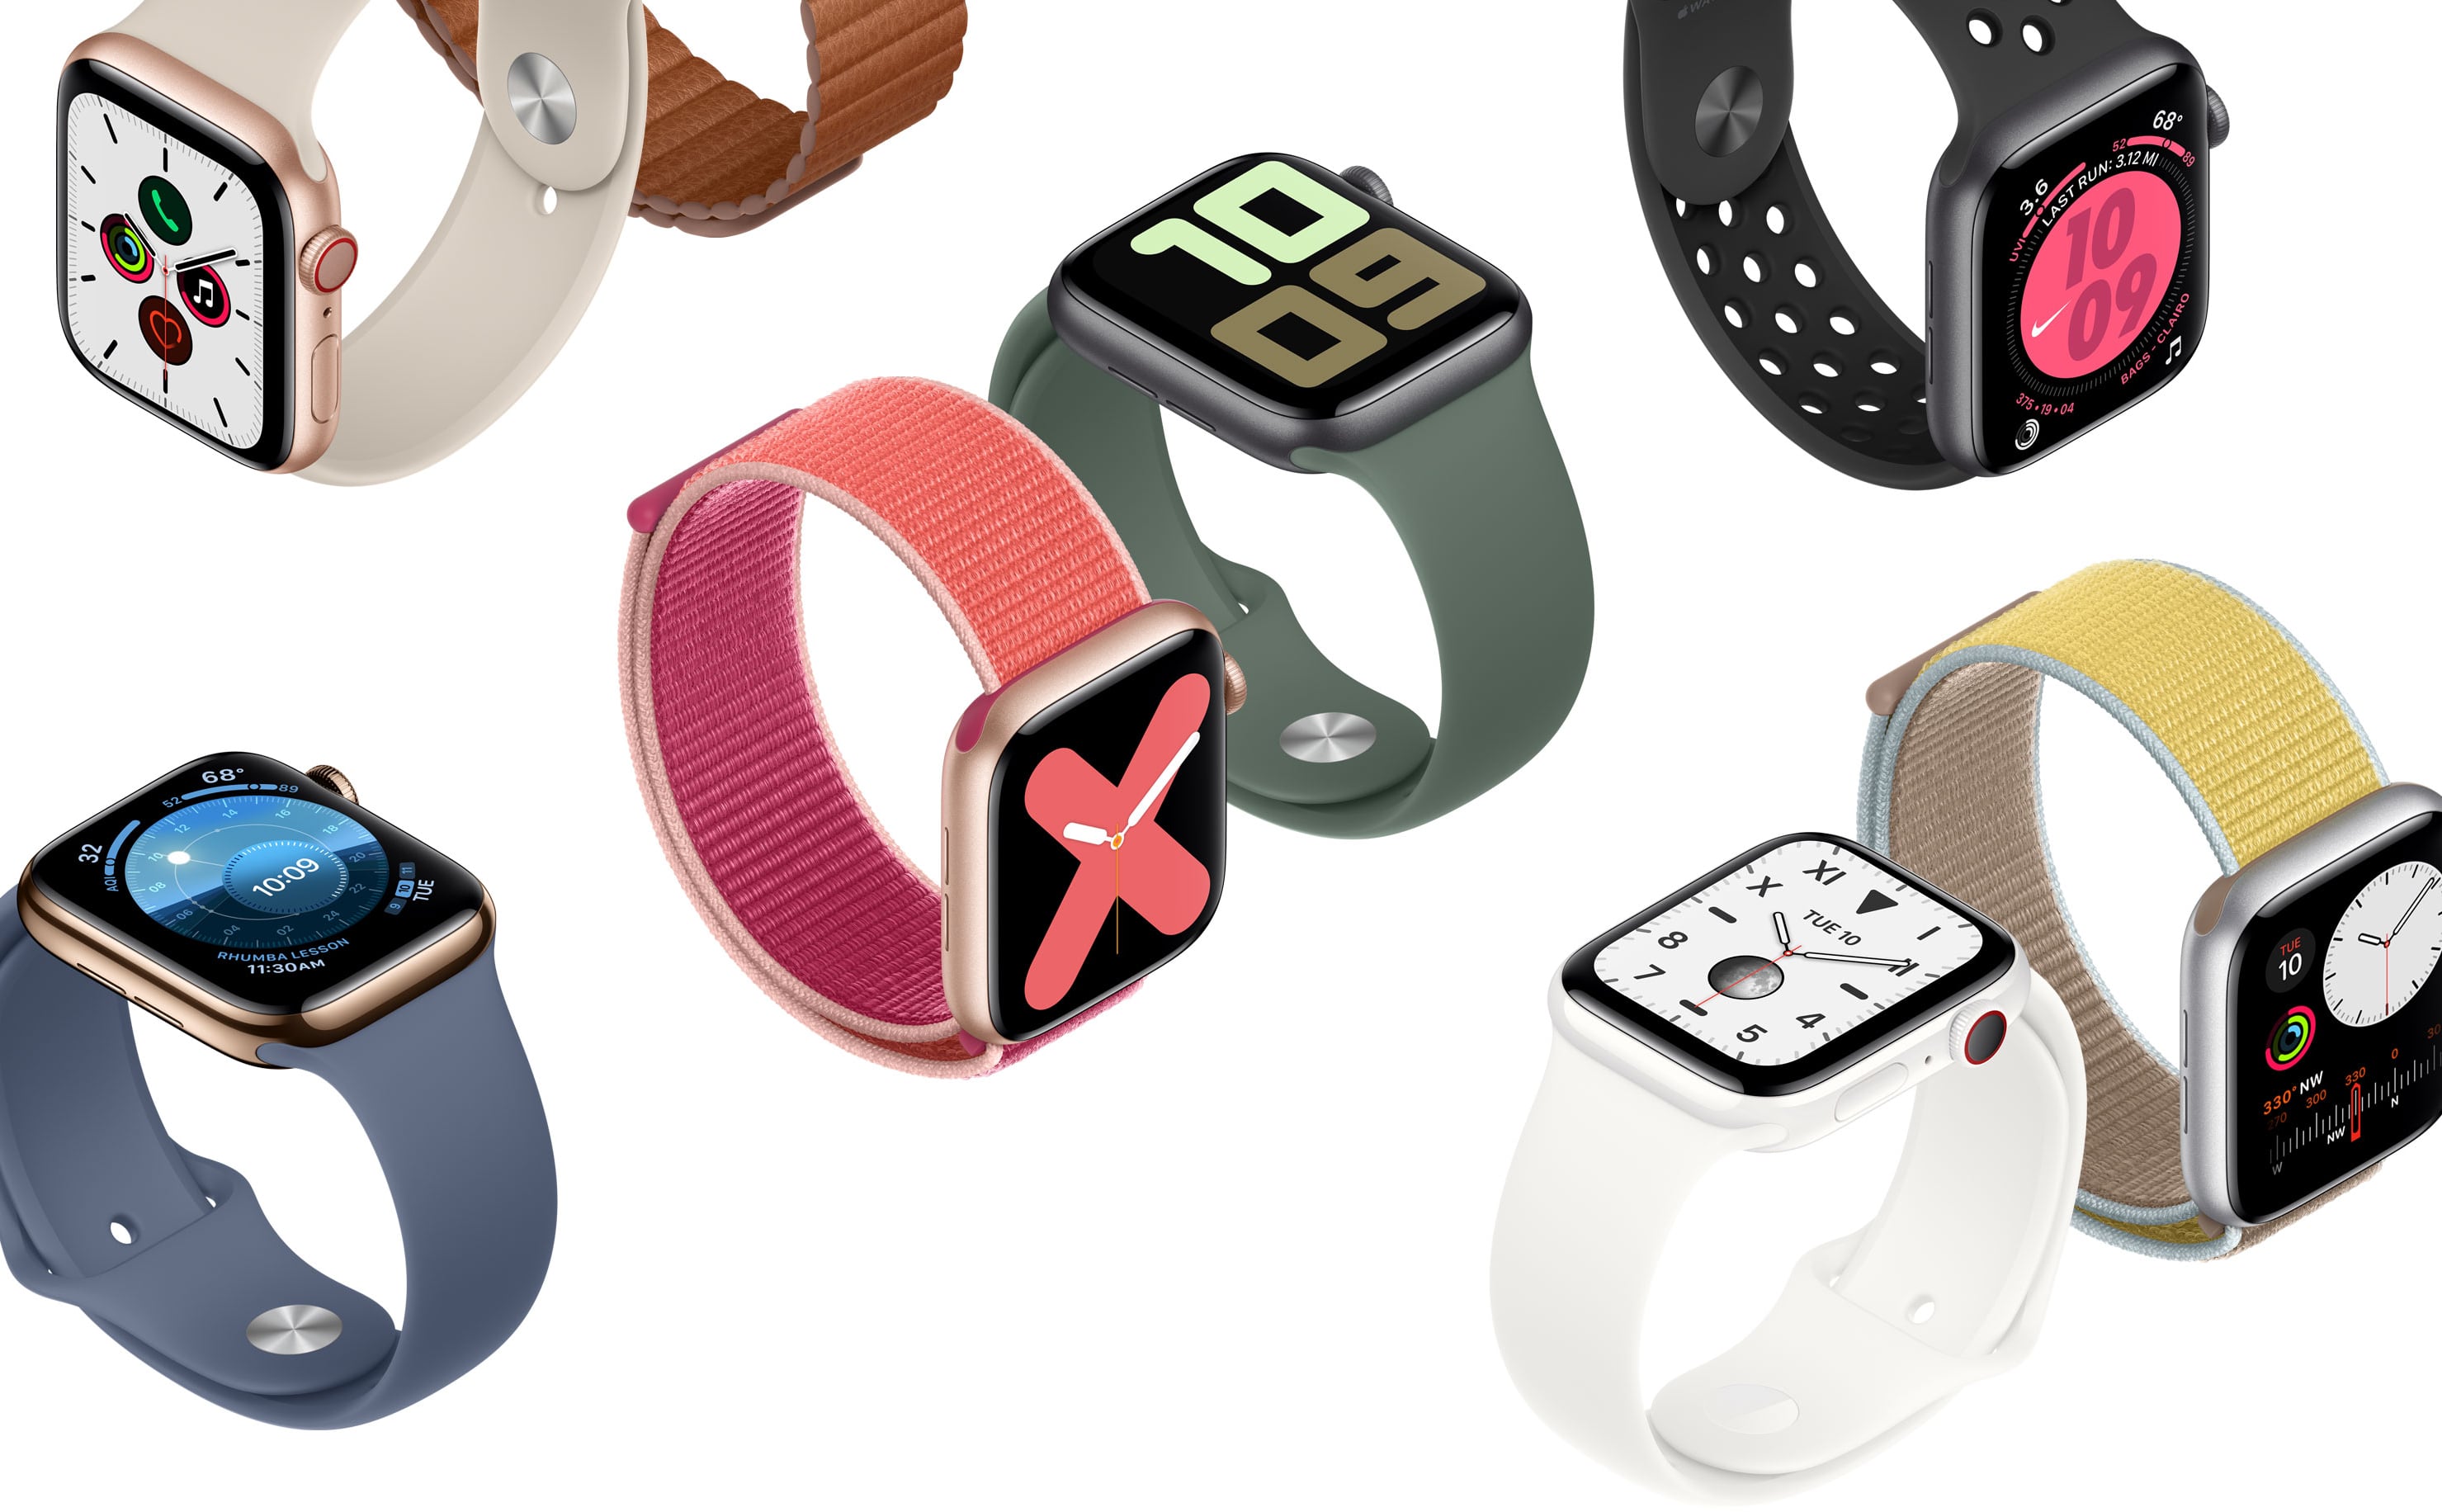 Apple Watch Series 5 chính thức: Màn hình luôn sáng, thêm tuỳ chọn vỏ ceramic và titanium